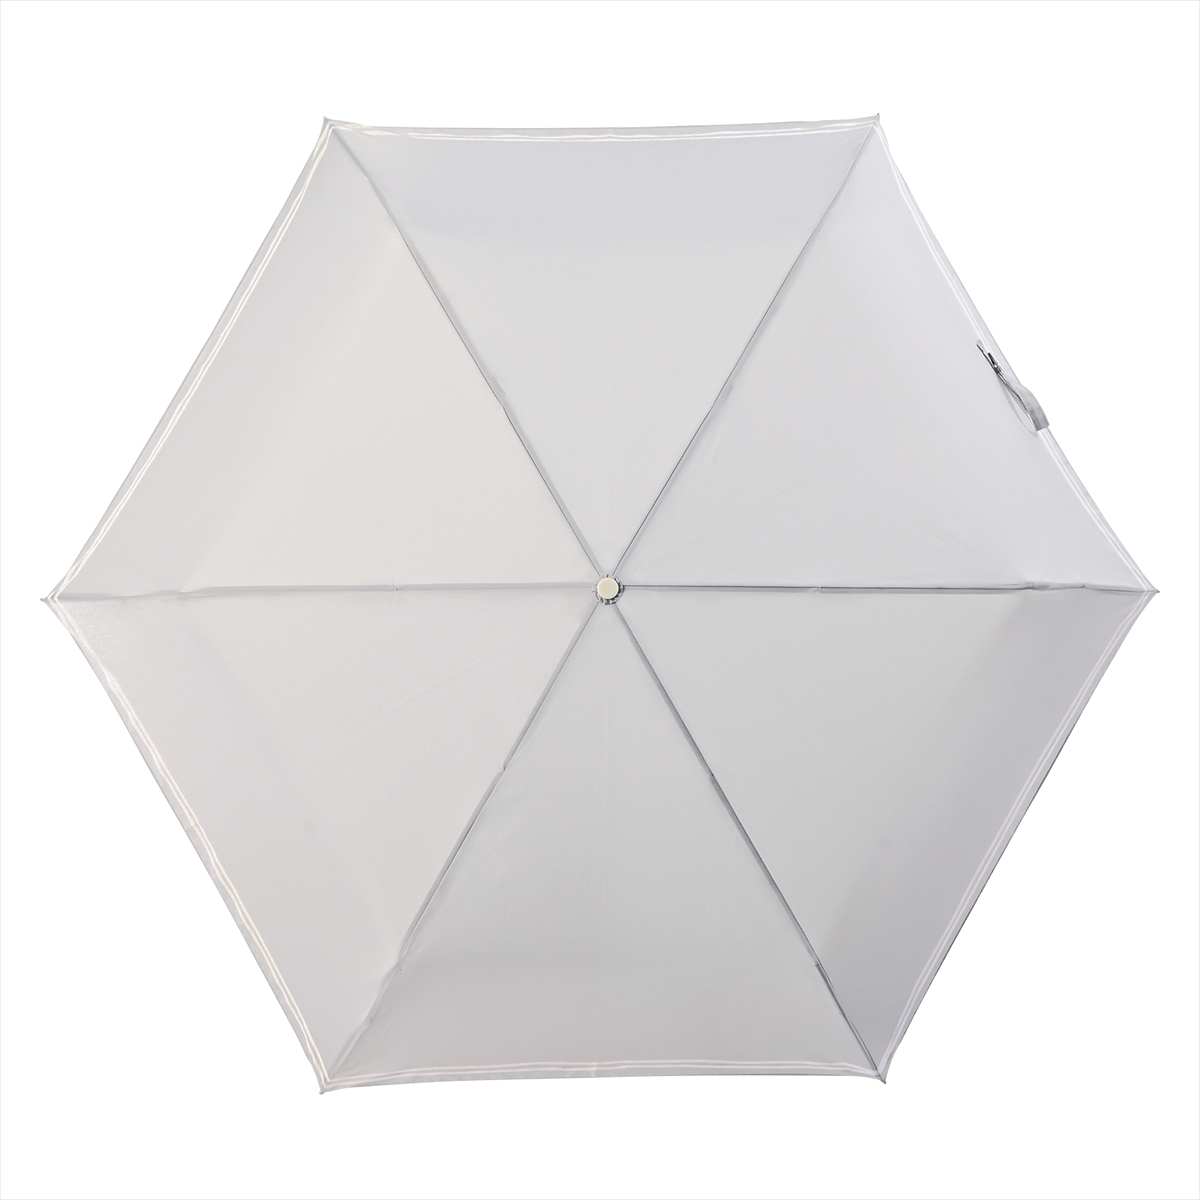 公式 傘 レディース 折傘 晴雨兼用 55cm 大きめ かわいい ニフティカラーズ